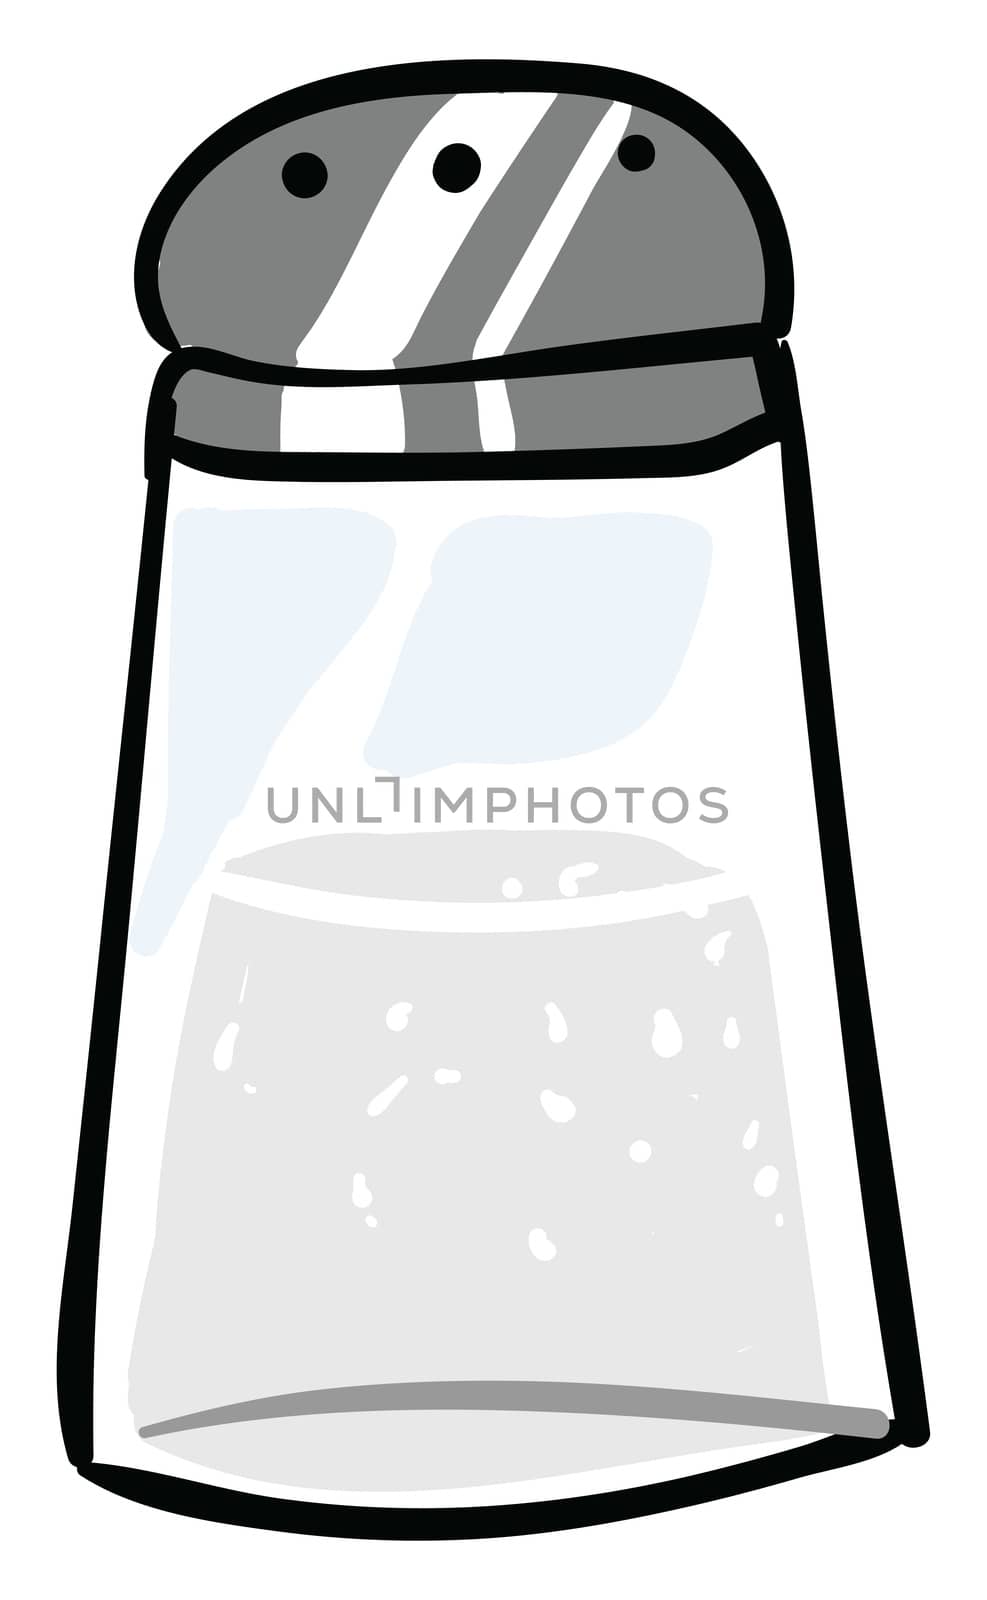 Salt shaker , illustration, vector on white background by Morphart